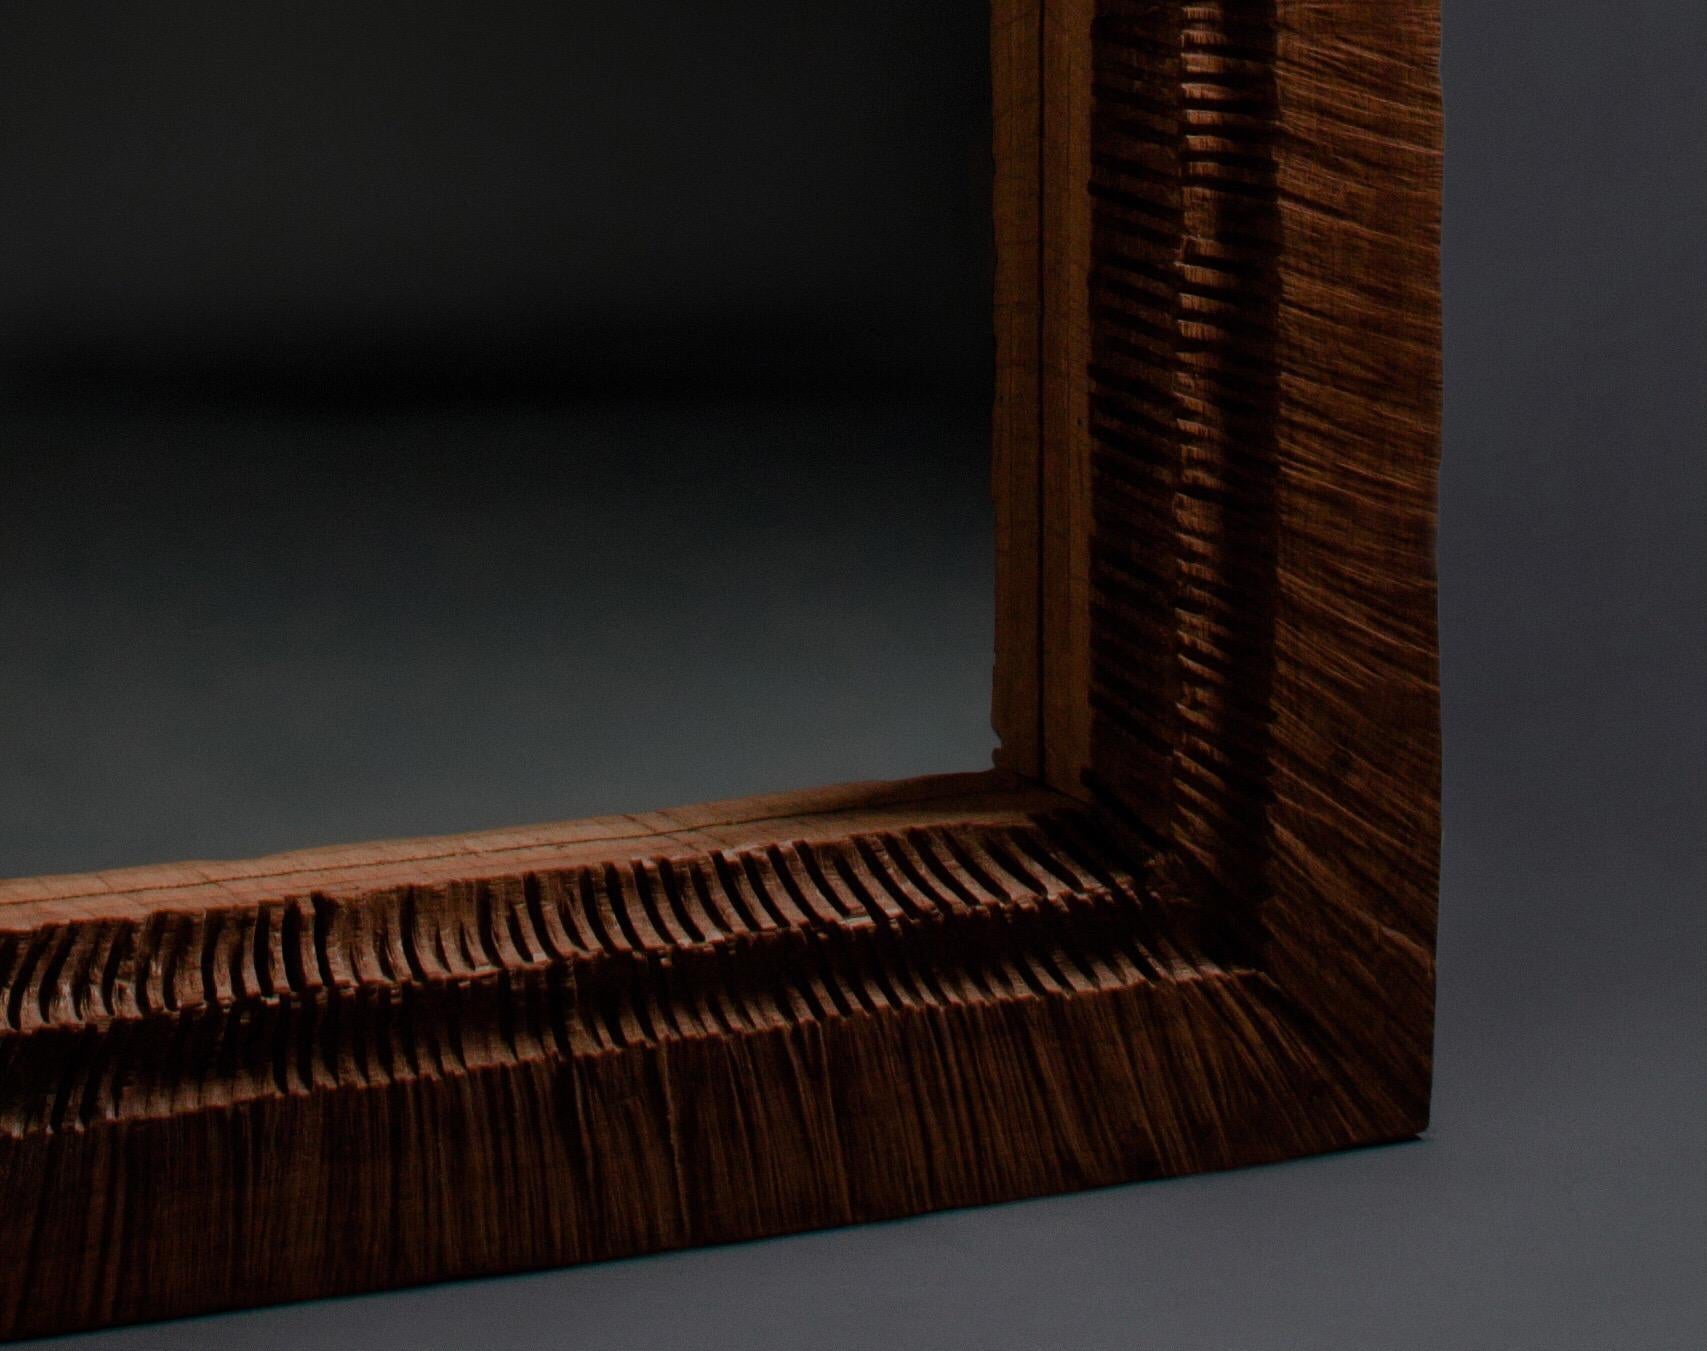 Spiegel in voller Länge aus massiver Eiche (+ Leinöl)
Maße: 189 x 98 x 10 cm

Das Sóha Design Studio entwirft und produziert Möbel und Dekorationsobjekte aus massiver Eiche in einem authentischen Stil. Die Inspiration für all diese Gegenstände kommt